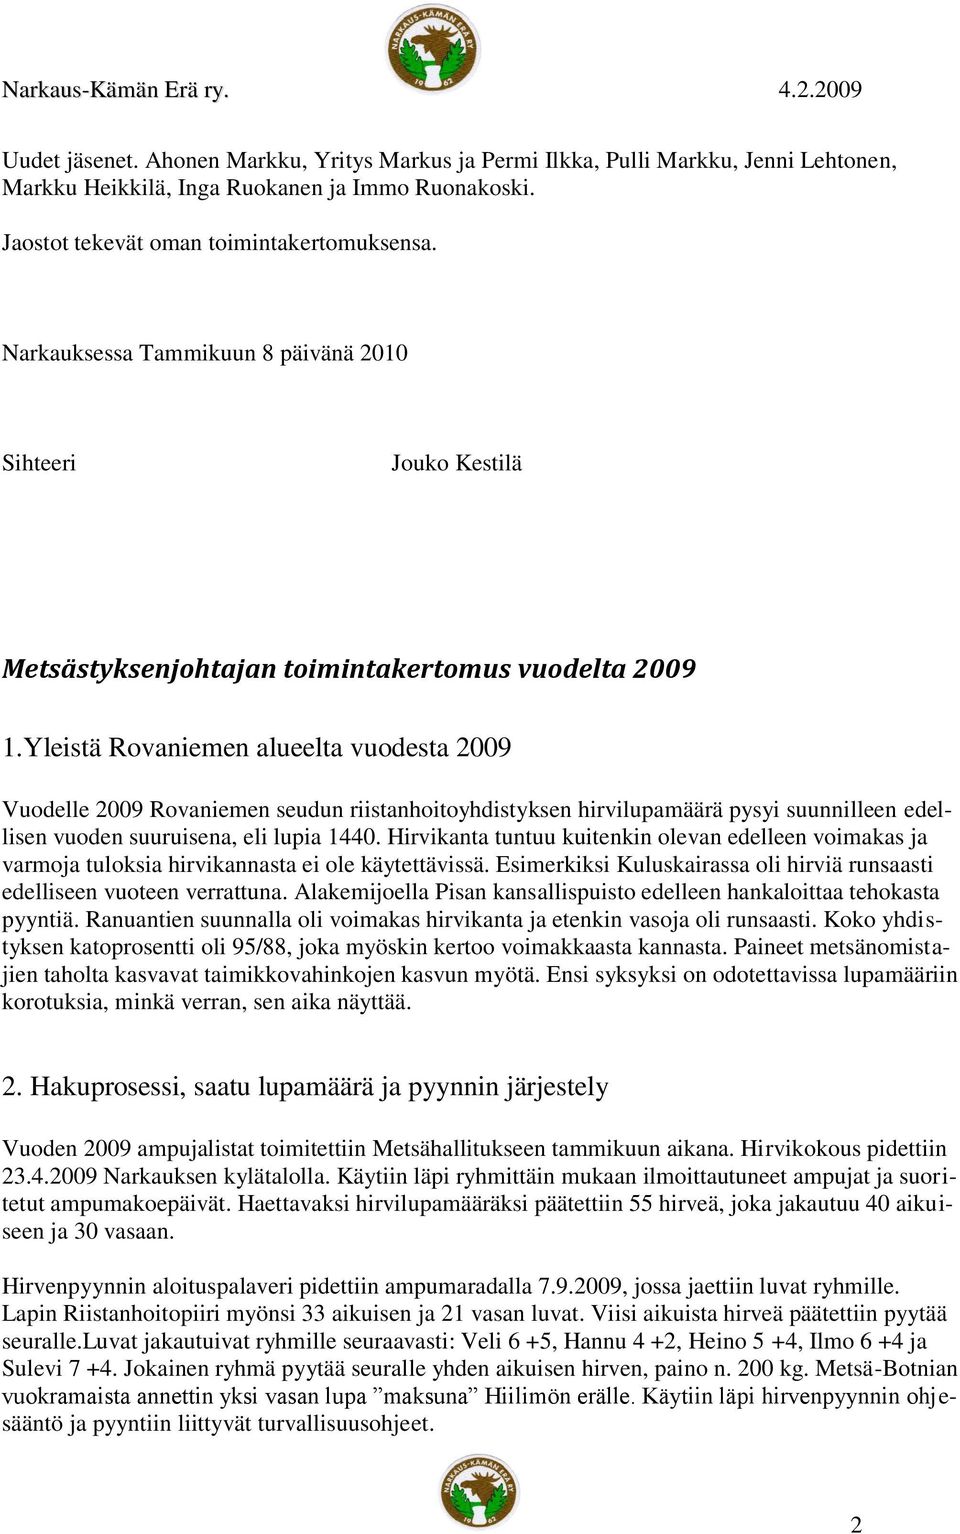 Yleistä Rovaniemen alueelta vuodesta 2009 Vuodelle 2009 Rovaniemen seudun riistanhoitoyhdistyksen hirvilupamäärä pysyi suunnilleen edellisen vuoden suuruisena, eli lupia 1440.